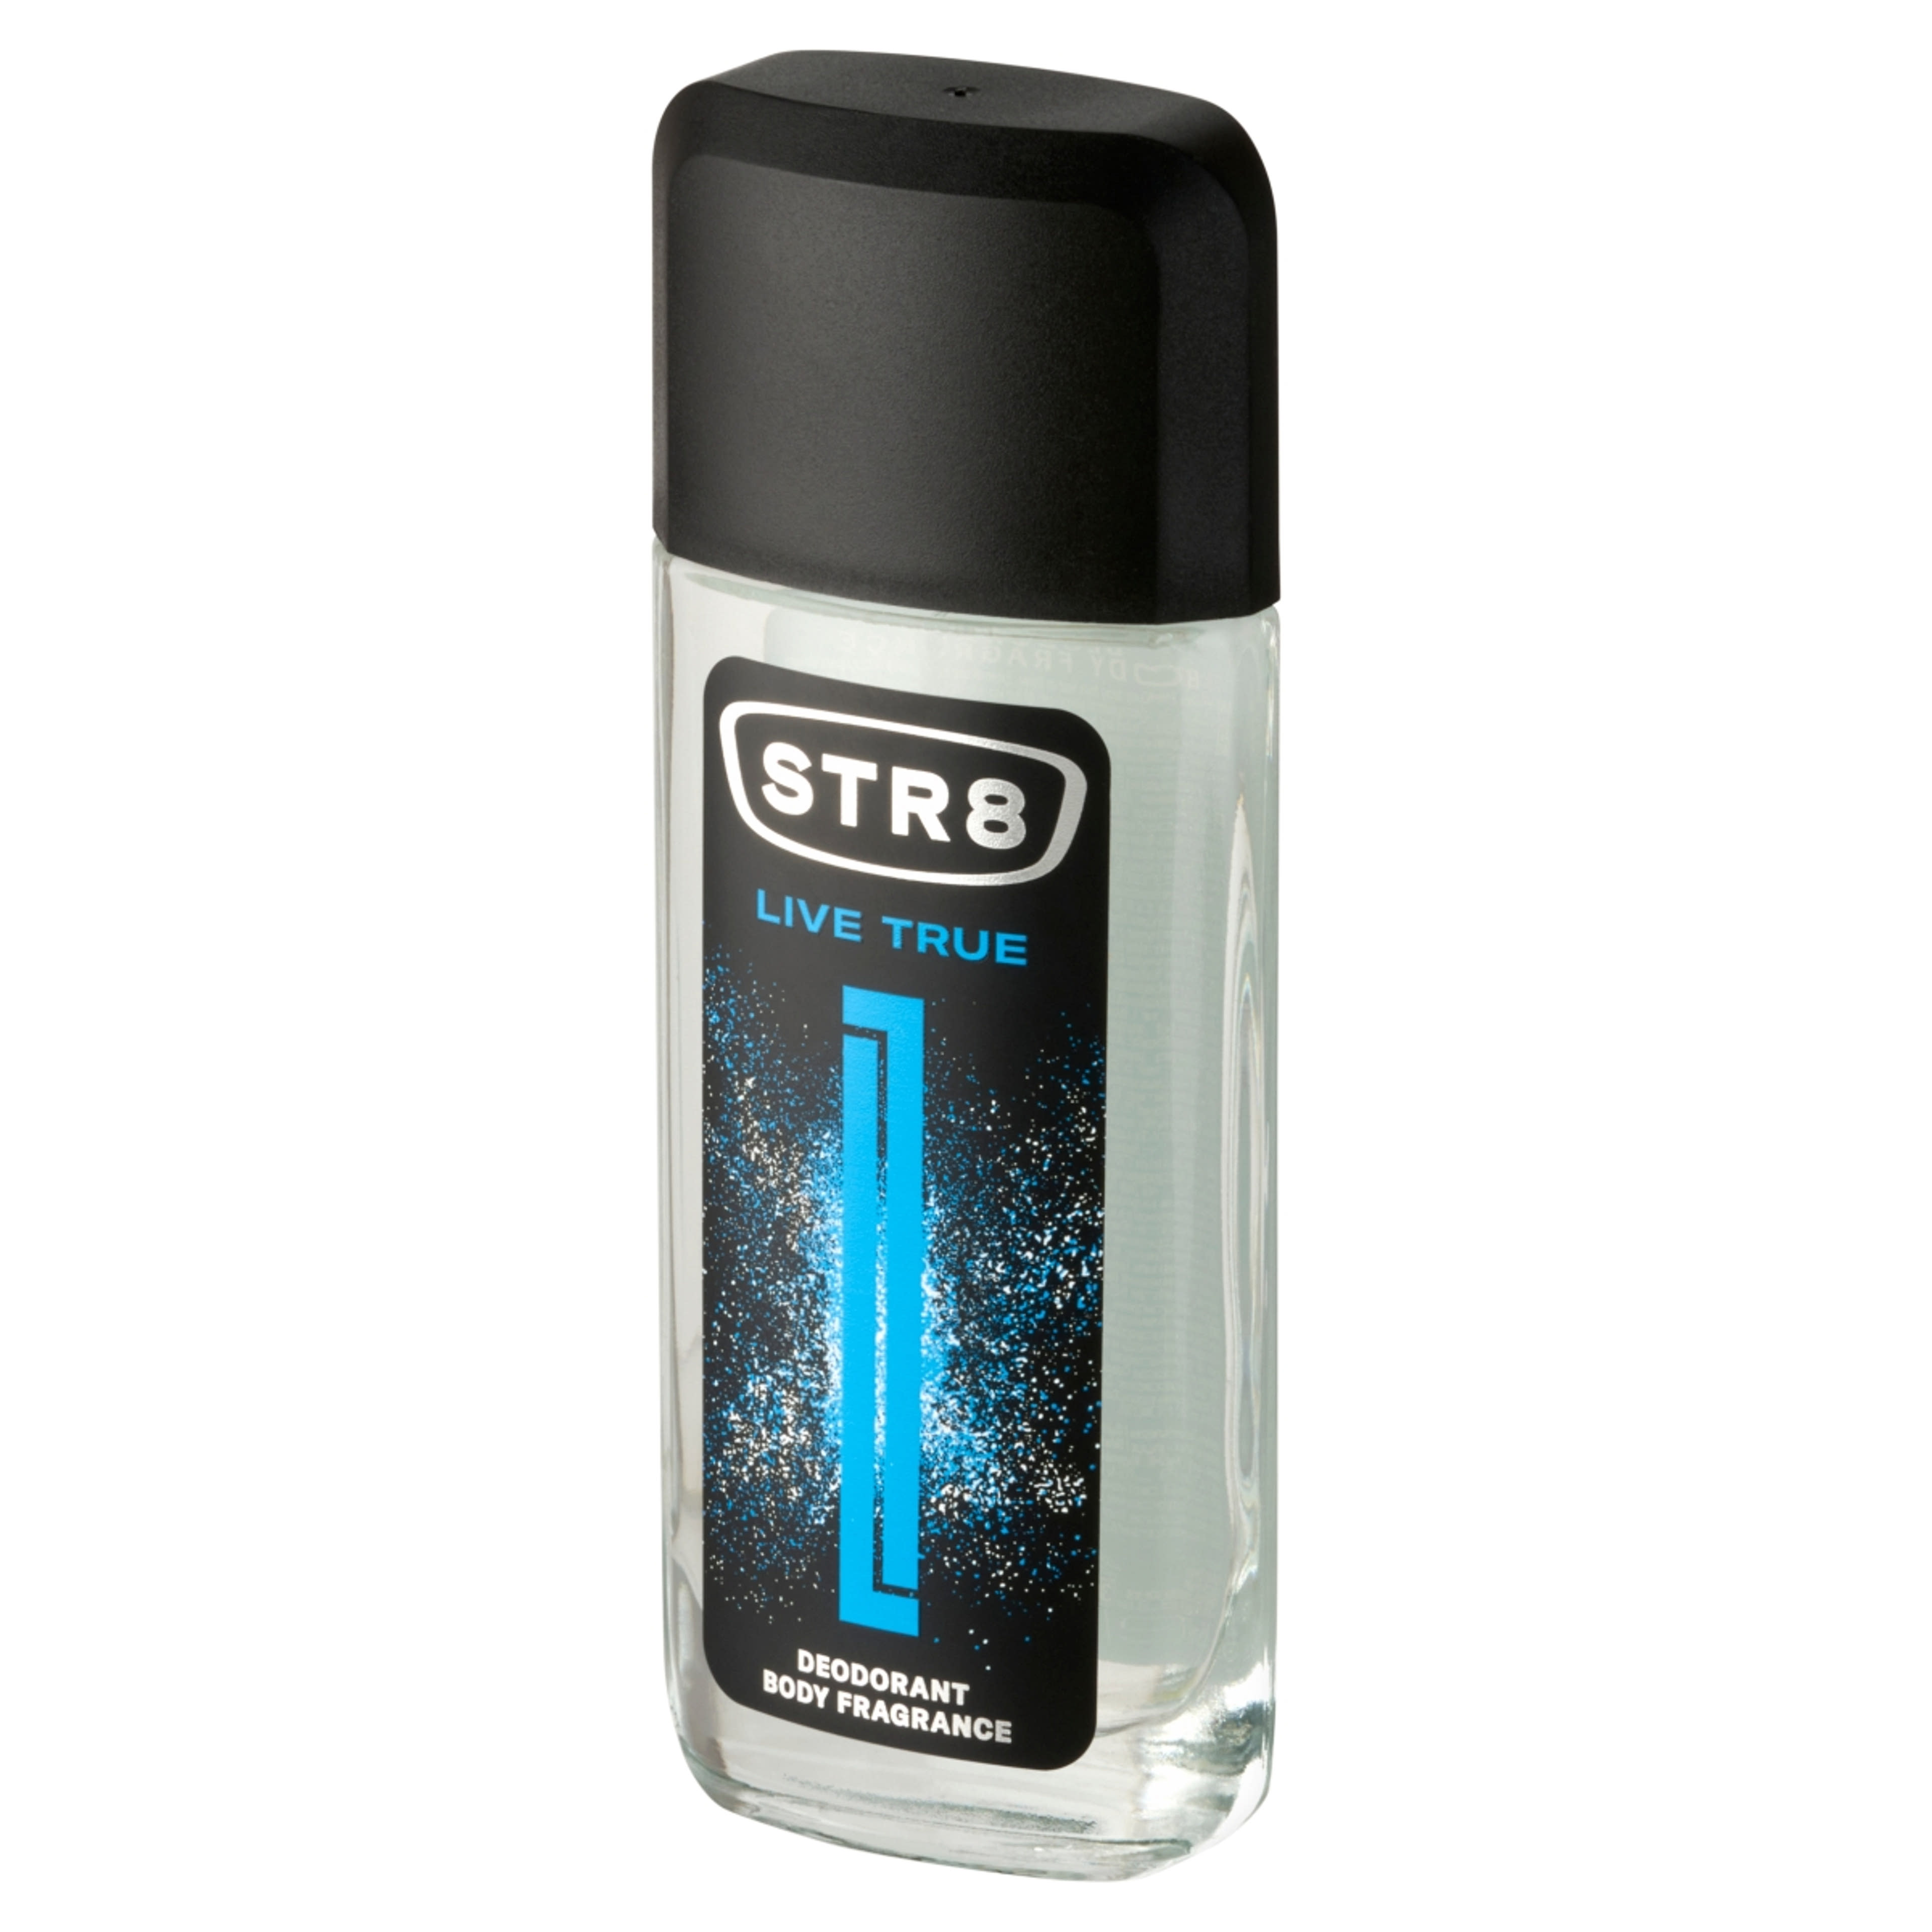 STR8 Live True Body Fragrance parfüm-spray - 85 ml-2